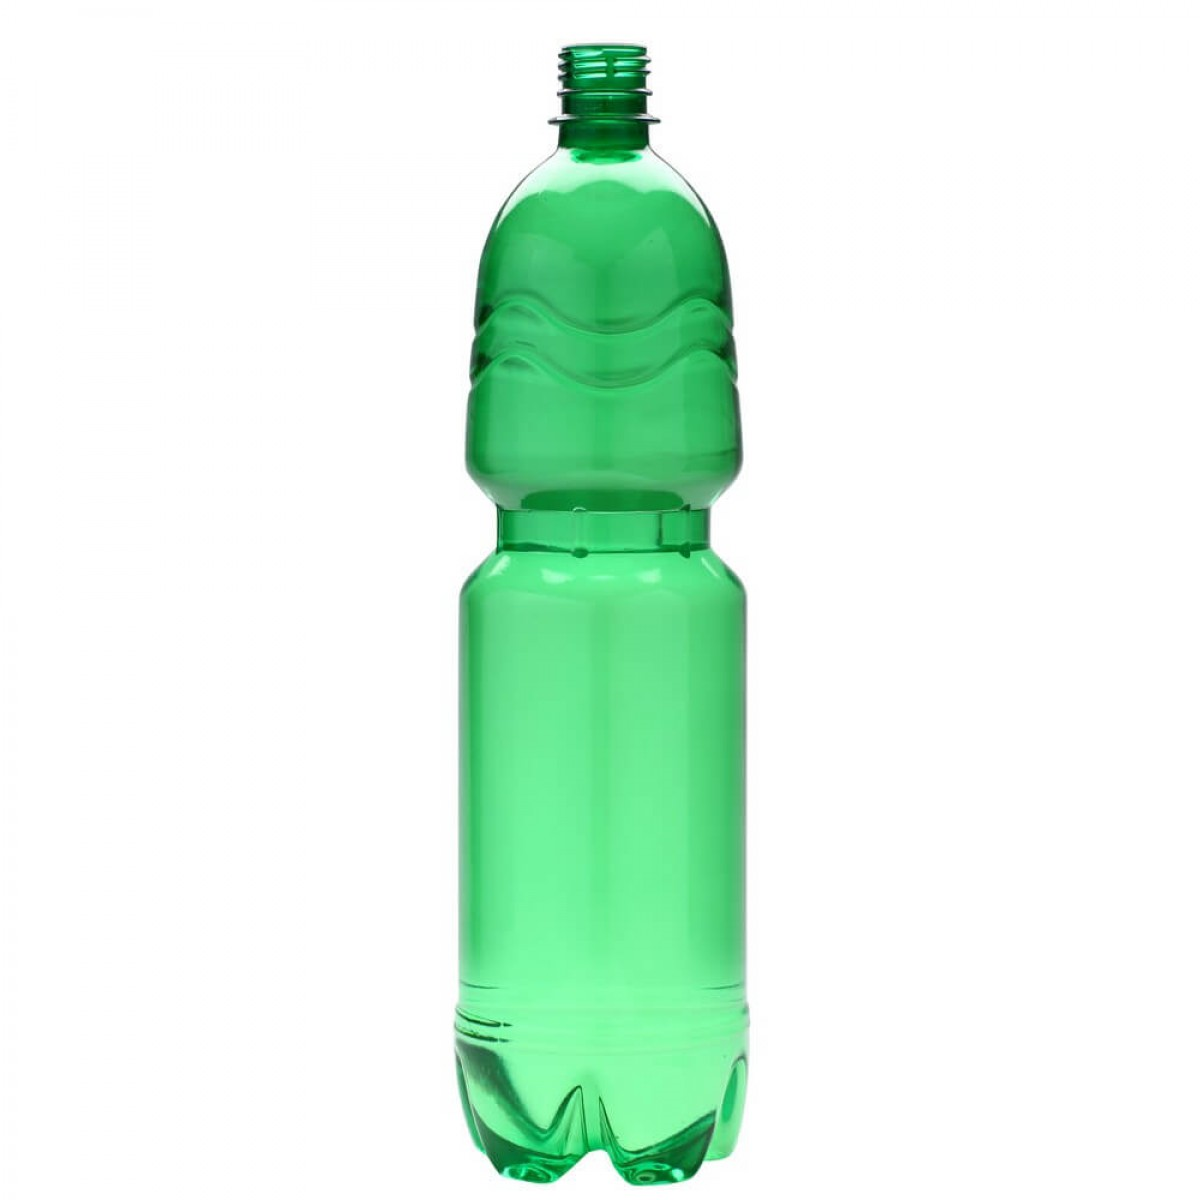 Купить пустую пластиковую бутылку. Перформа 1.5 бутылка ПЭТ. Зеленая пластиковая бутылка. ПЭТ бутылка зеленая. Бутылка 1.5 литра.